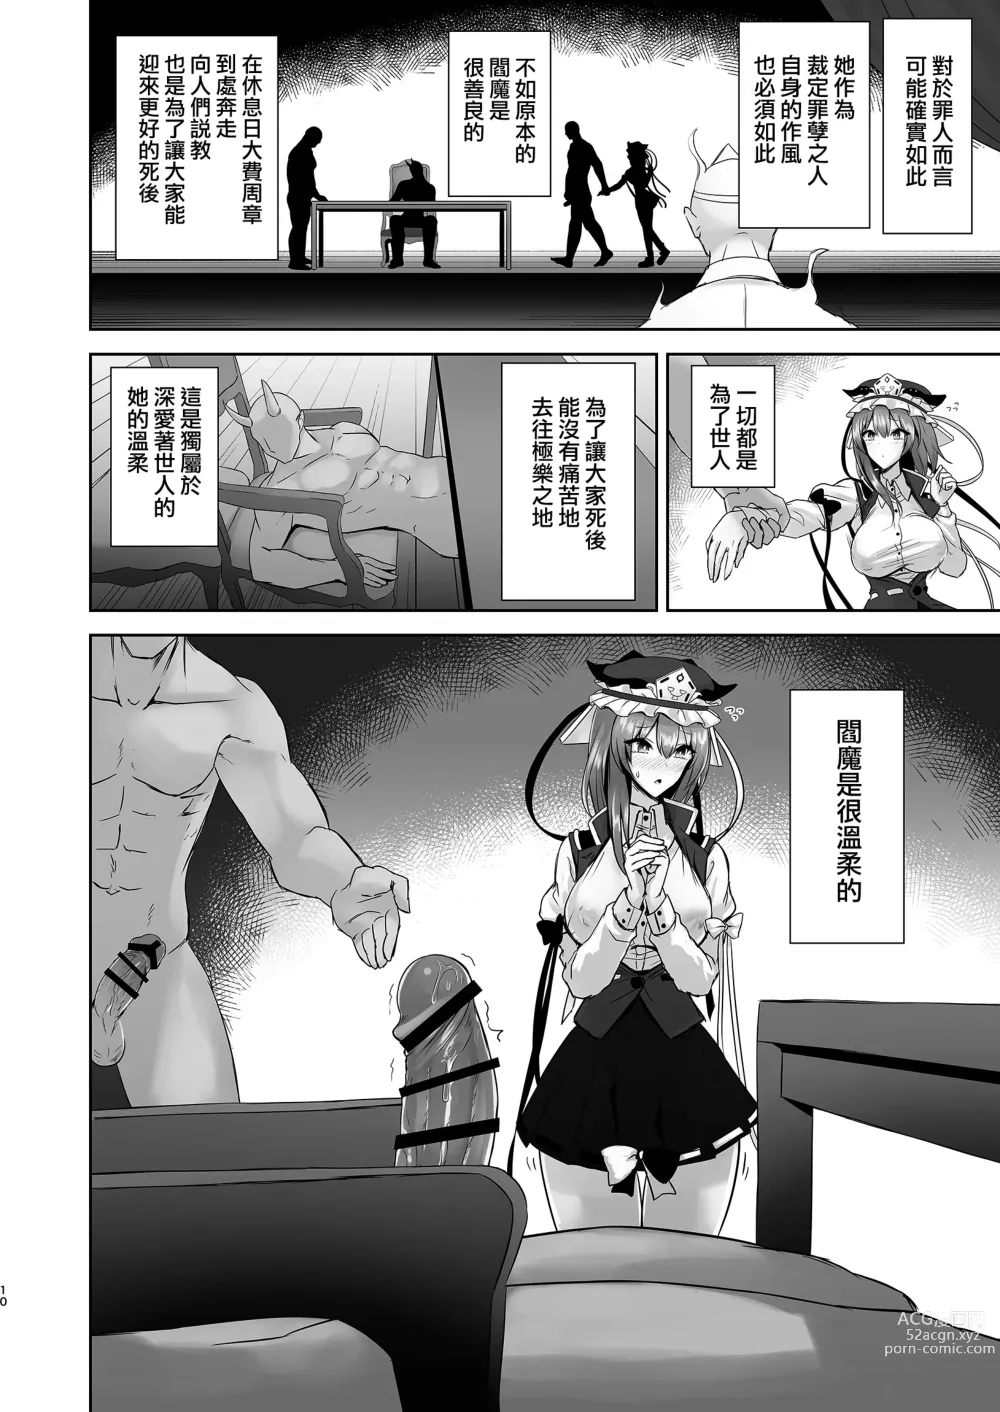 Page 9 of doujinshi Komeiseidai no Enma